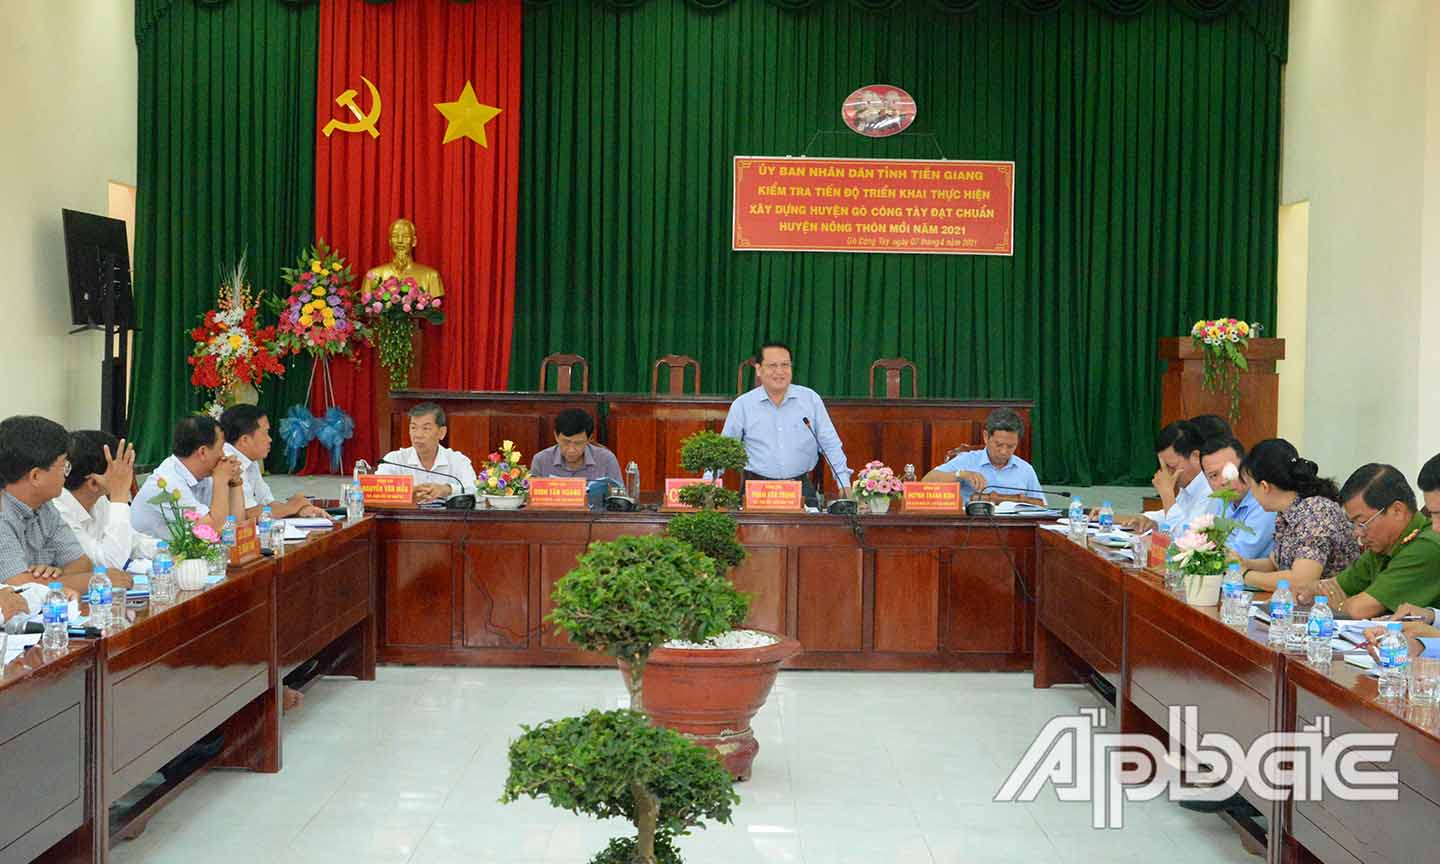 Đồng chí Phạm Văn Trọng phát biểu tại buổi làm việc.